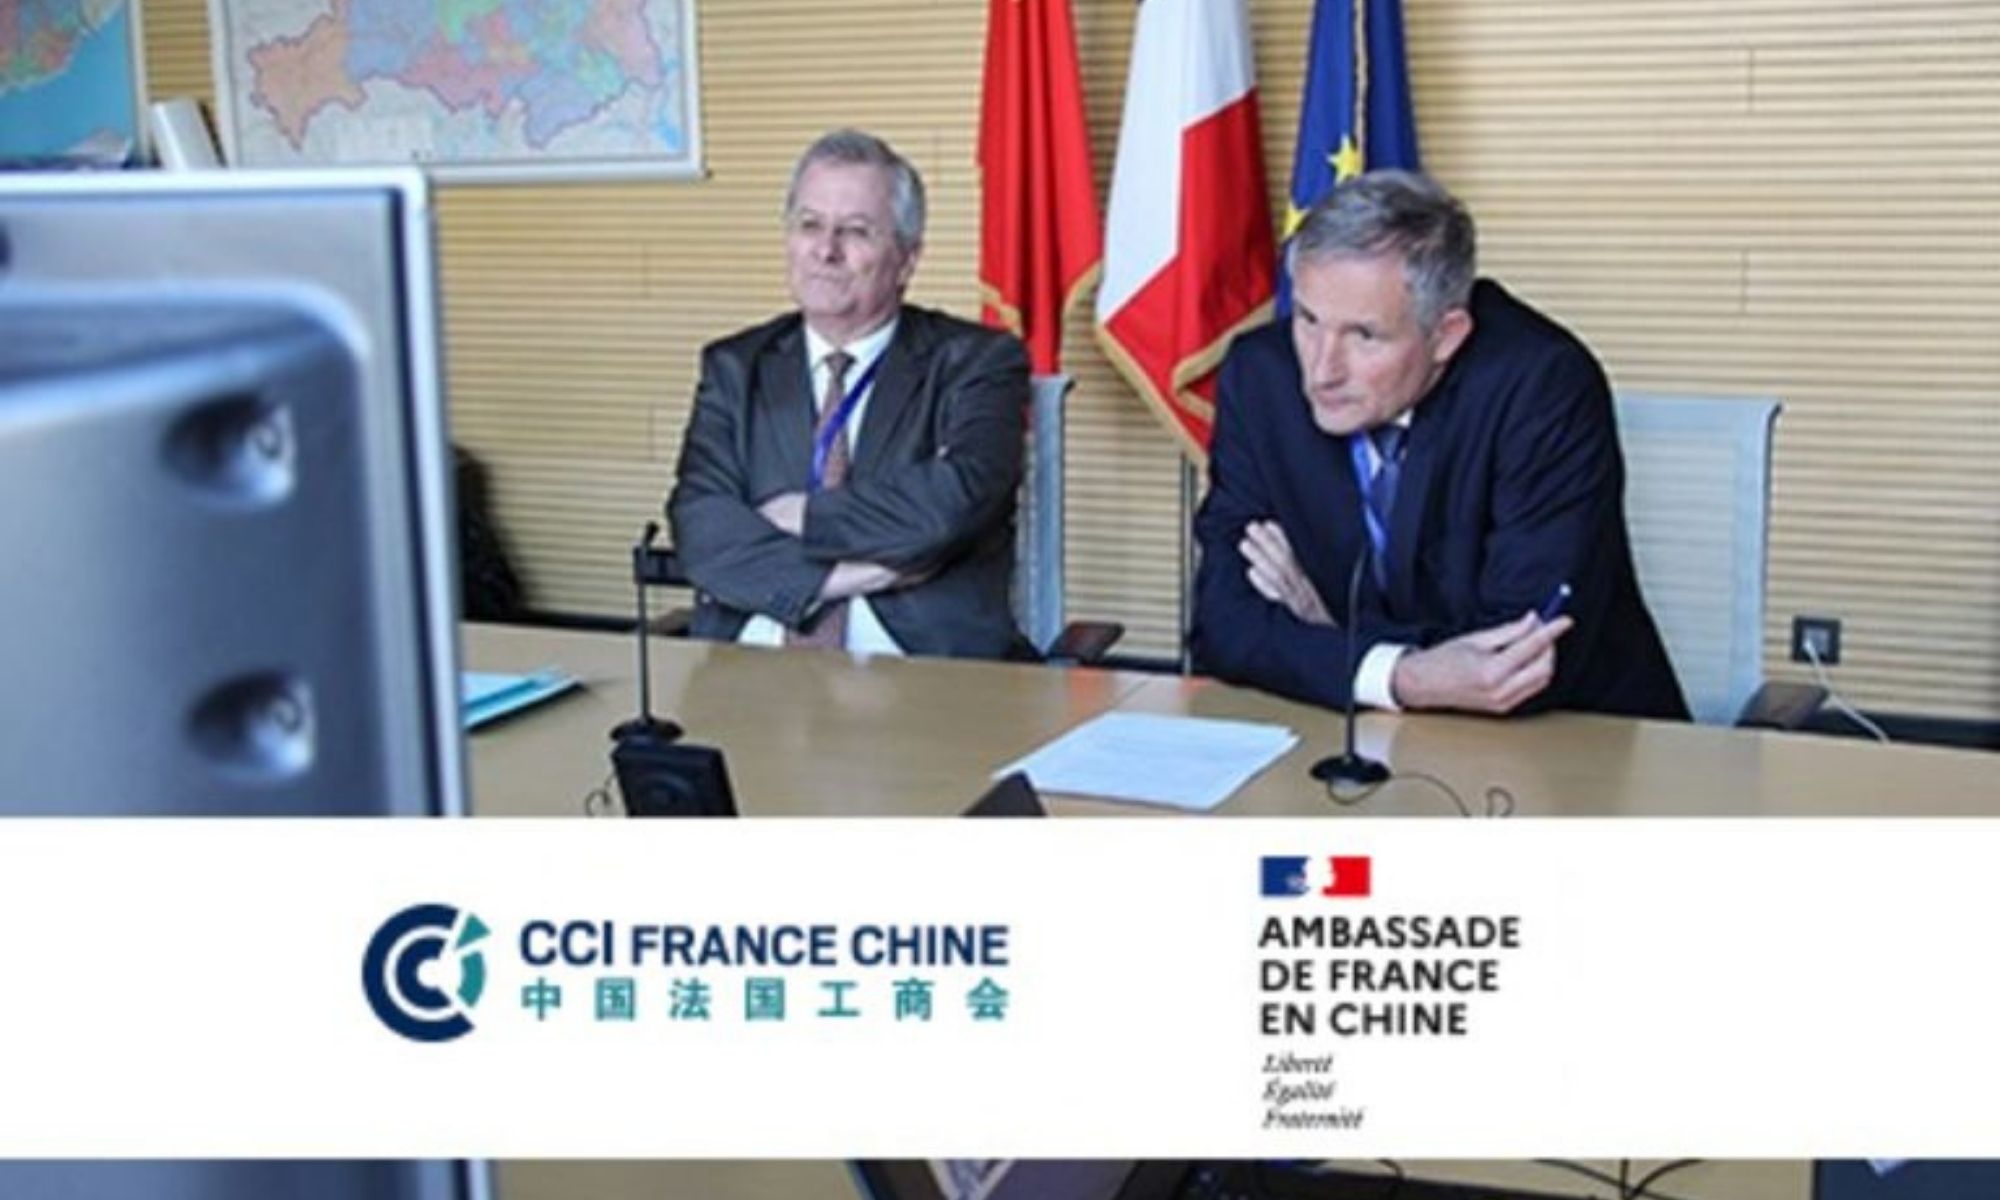 Conference-ambassadeur-France-Chine